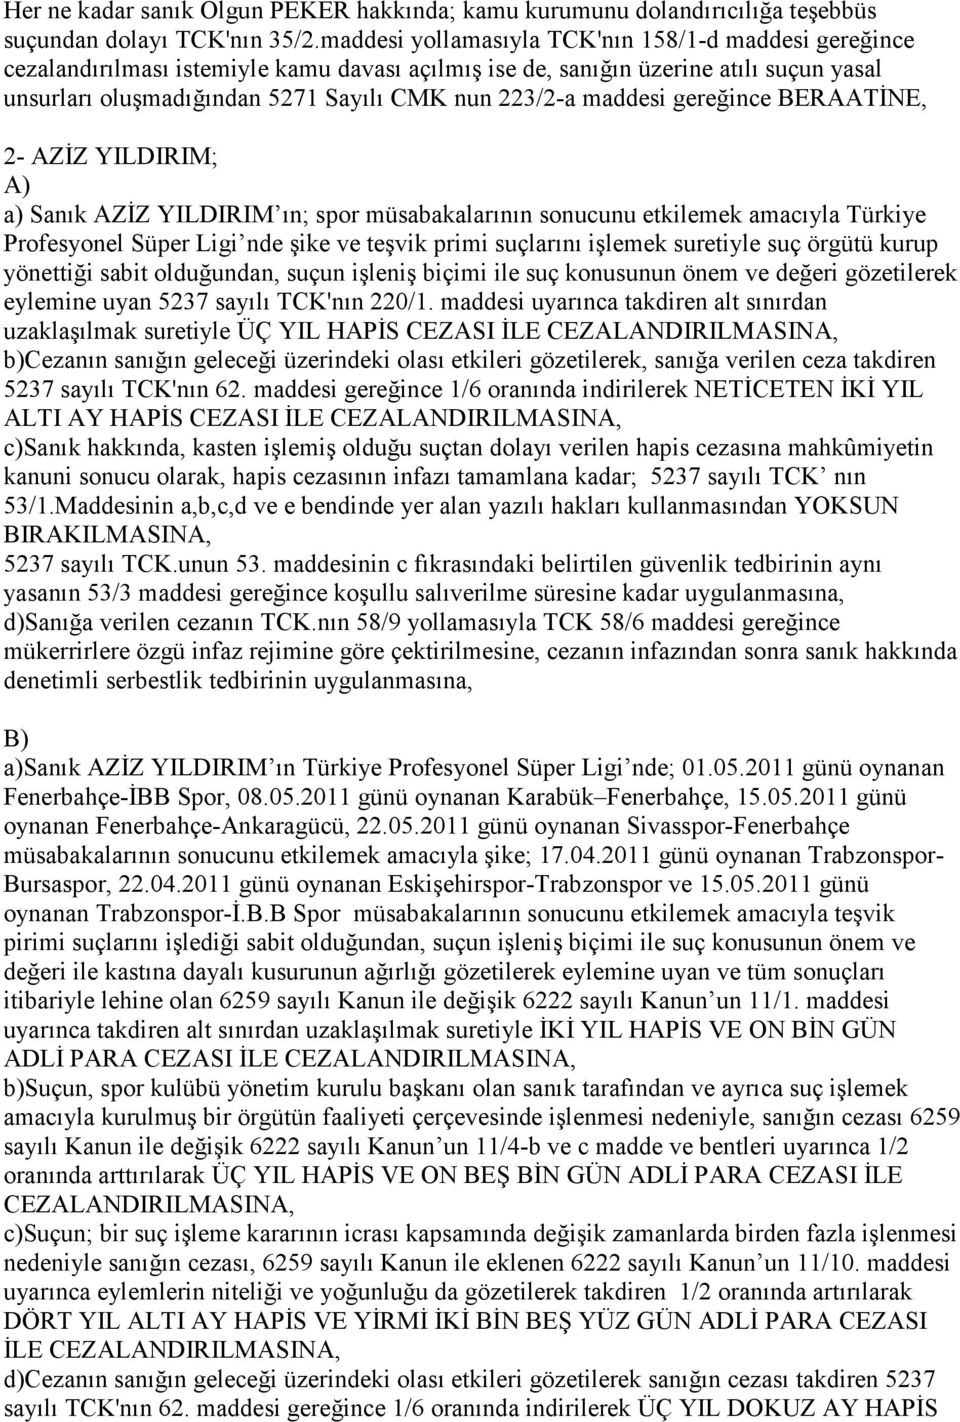 maddesi gereğince BERAATĐNE, 2- AZĐZ YILDIRIM; A) a) Sanık AZĐZ YILDIRIM ın; spor müsabakalarının sonucunu etkilemek amacıyla Türkiye Profesyonel Süper Ligi nde şike ve teşvik primi suçlarını işlemek